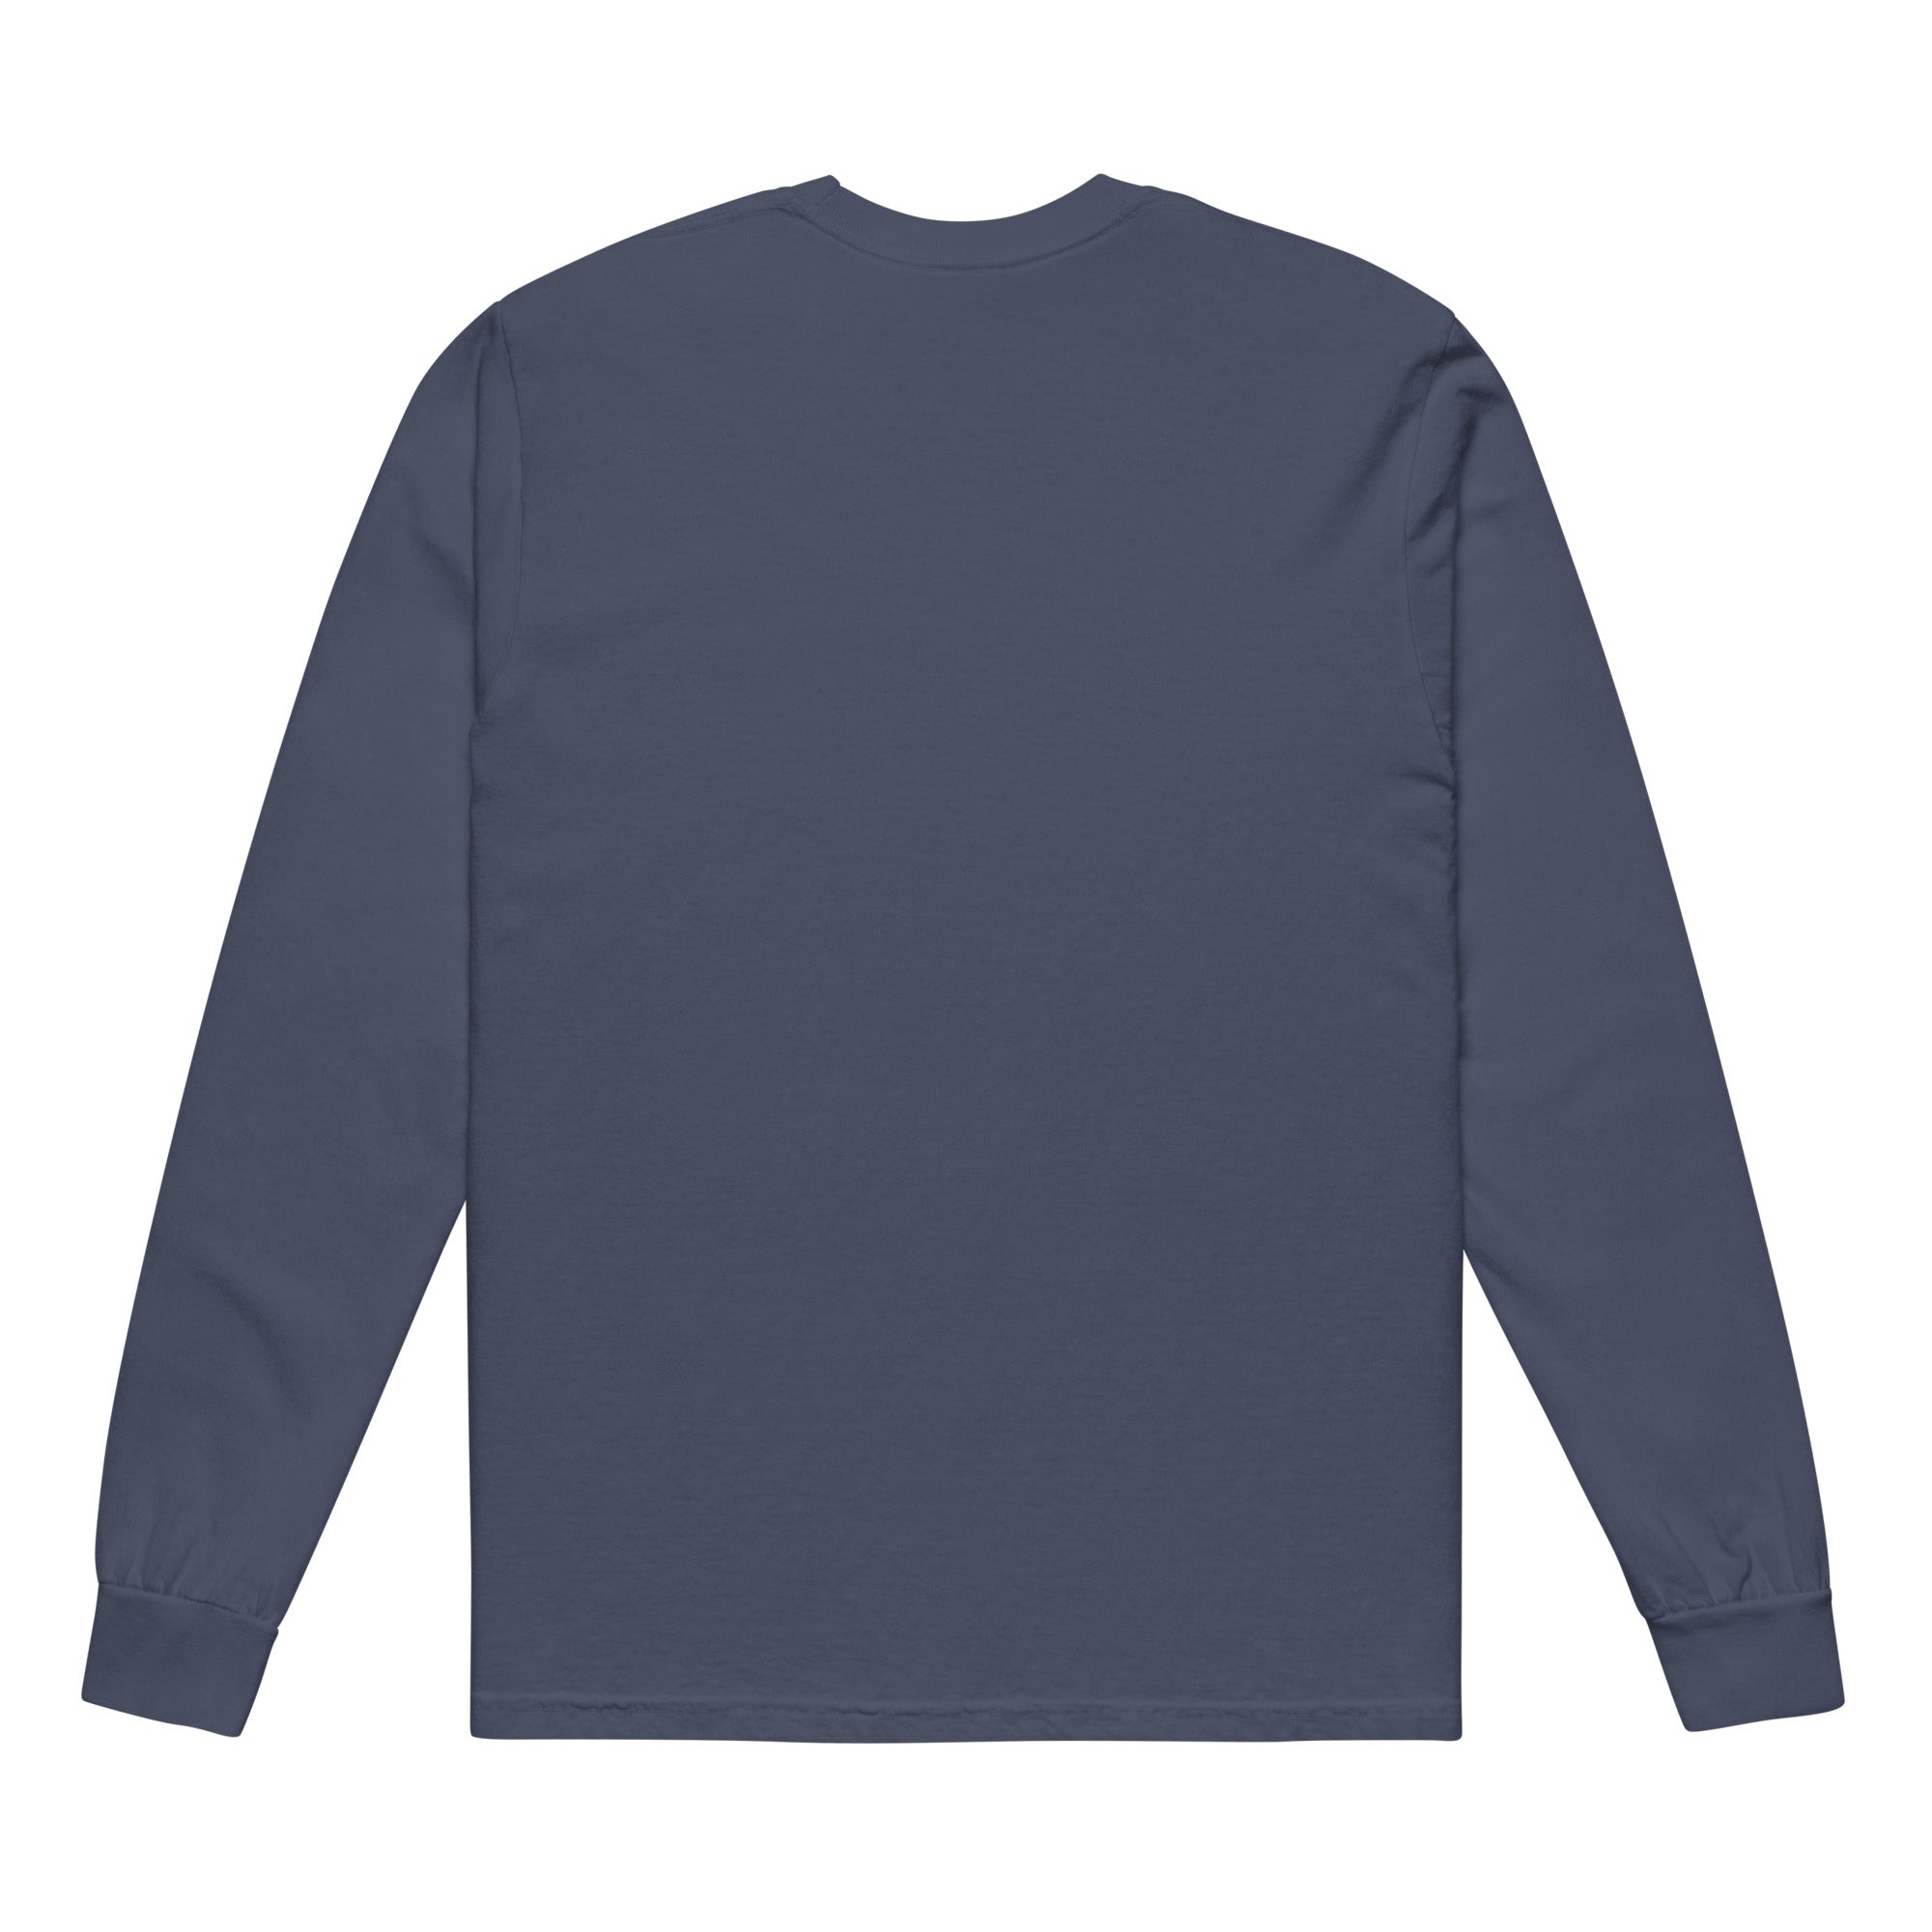 Spirit of 76 Garment-dyed heavyweight Long-sleeve Shirt